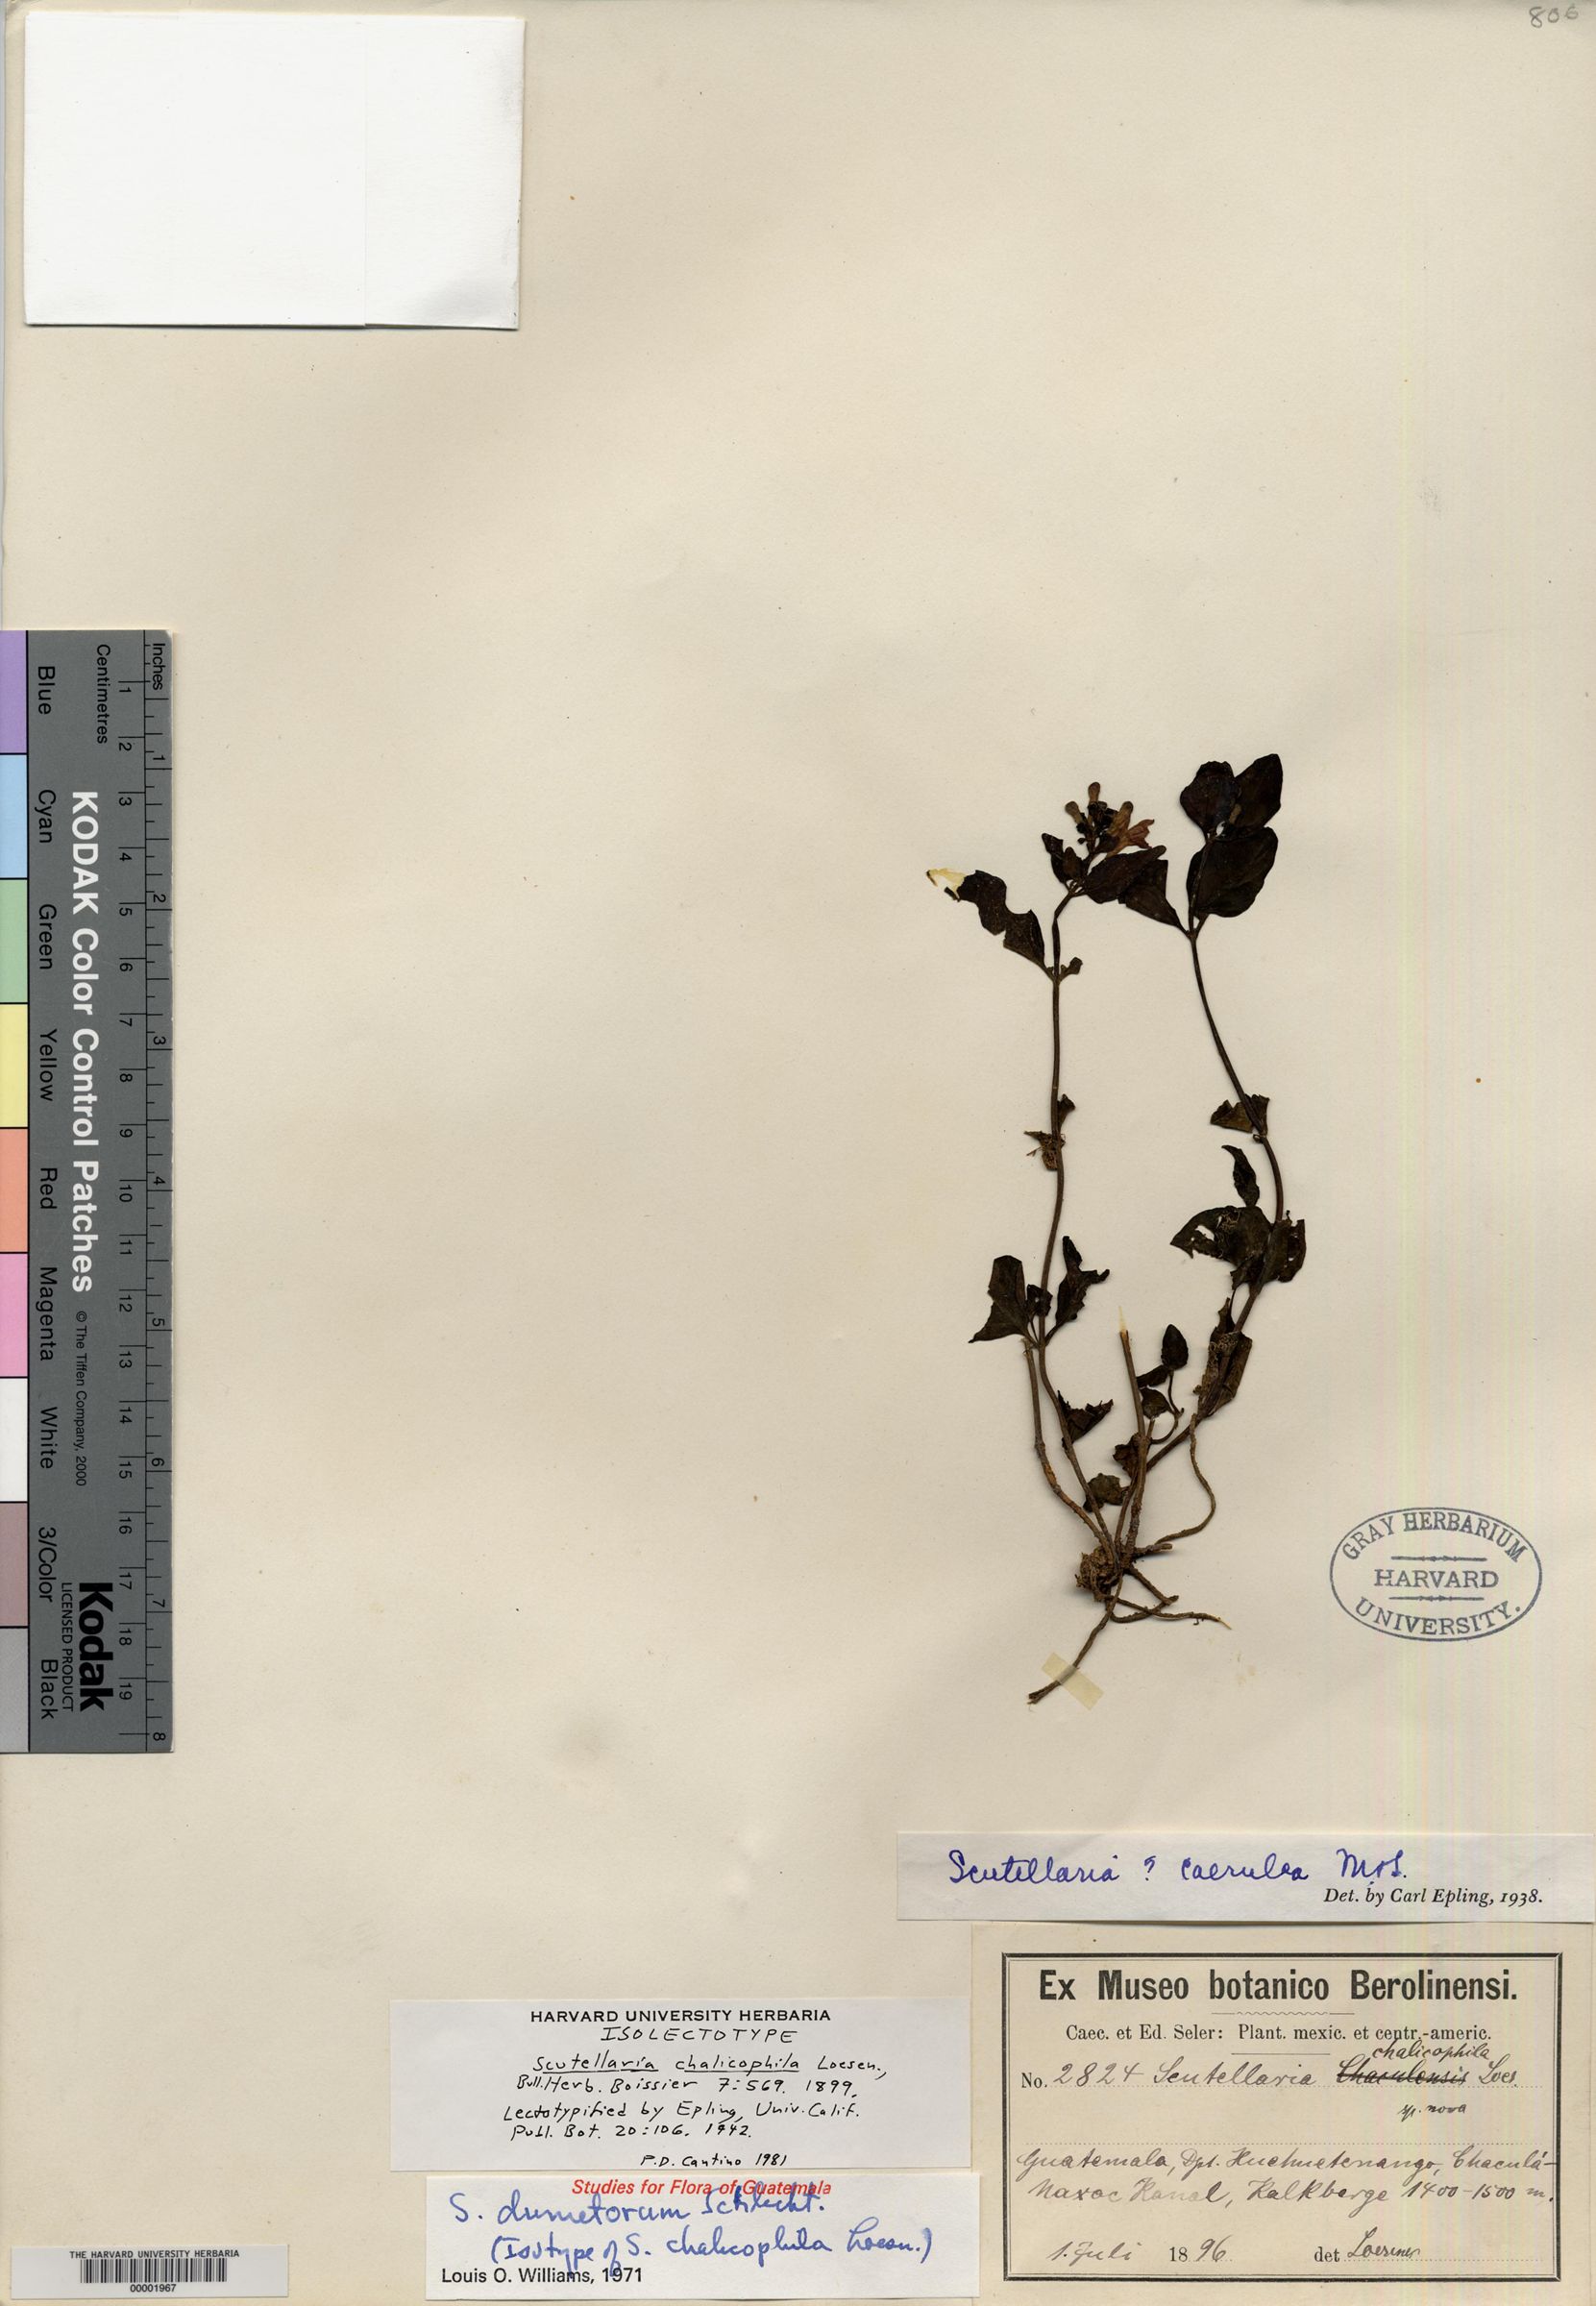 Scutellaria chalicophila image